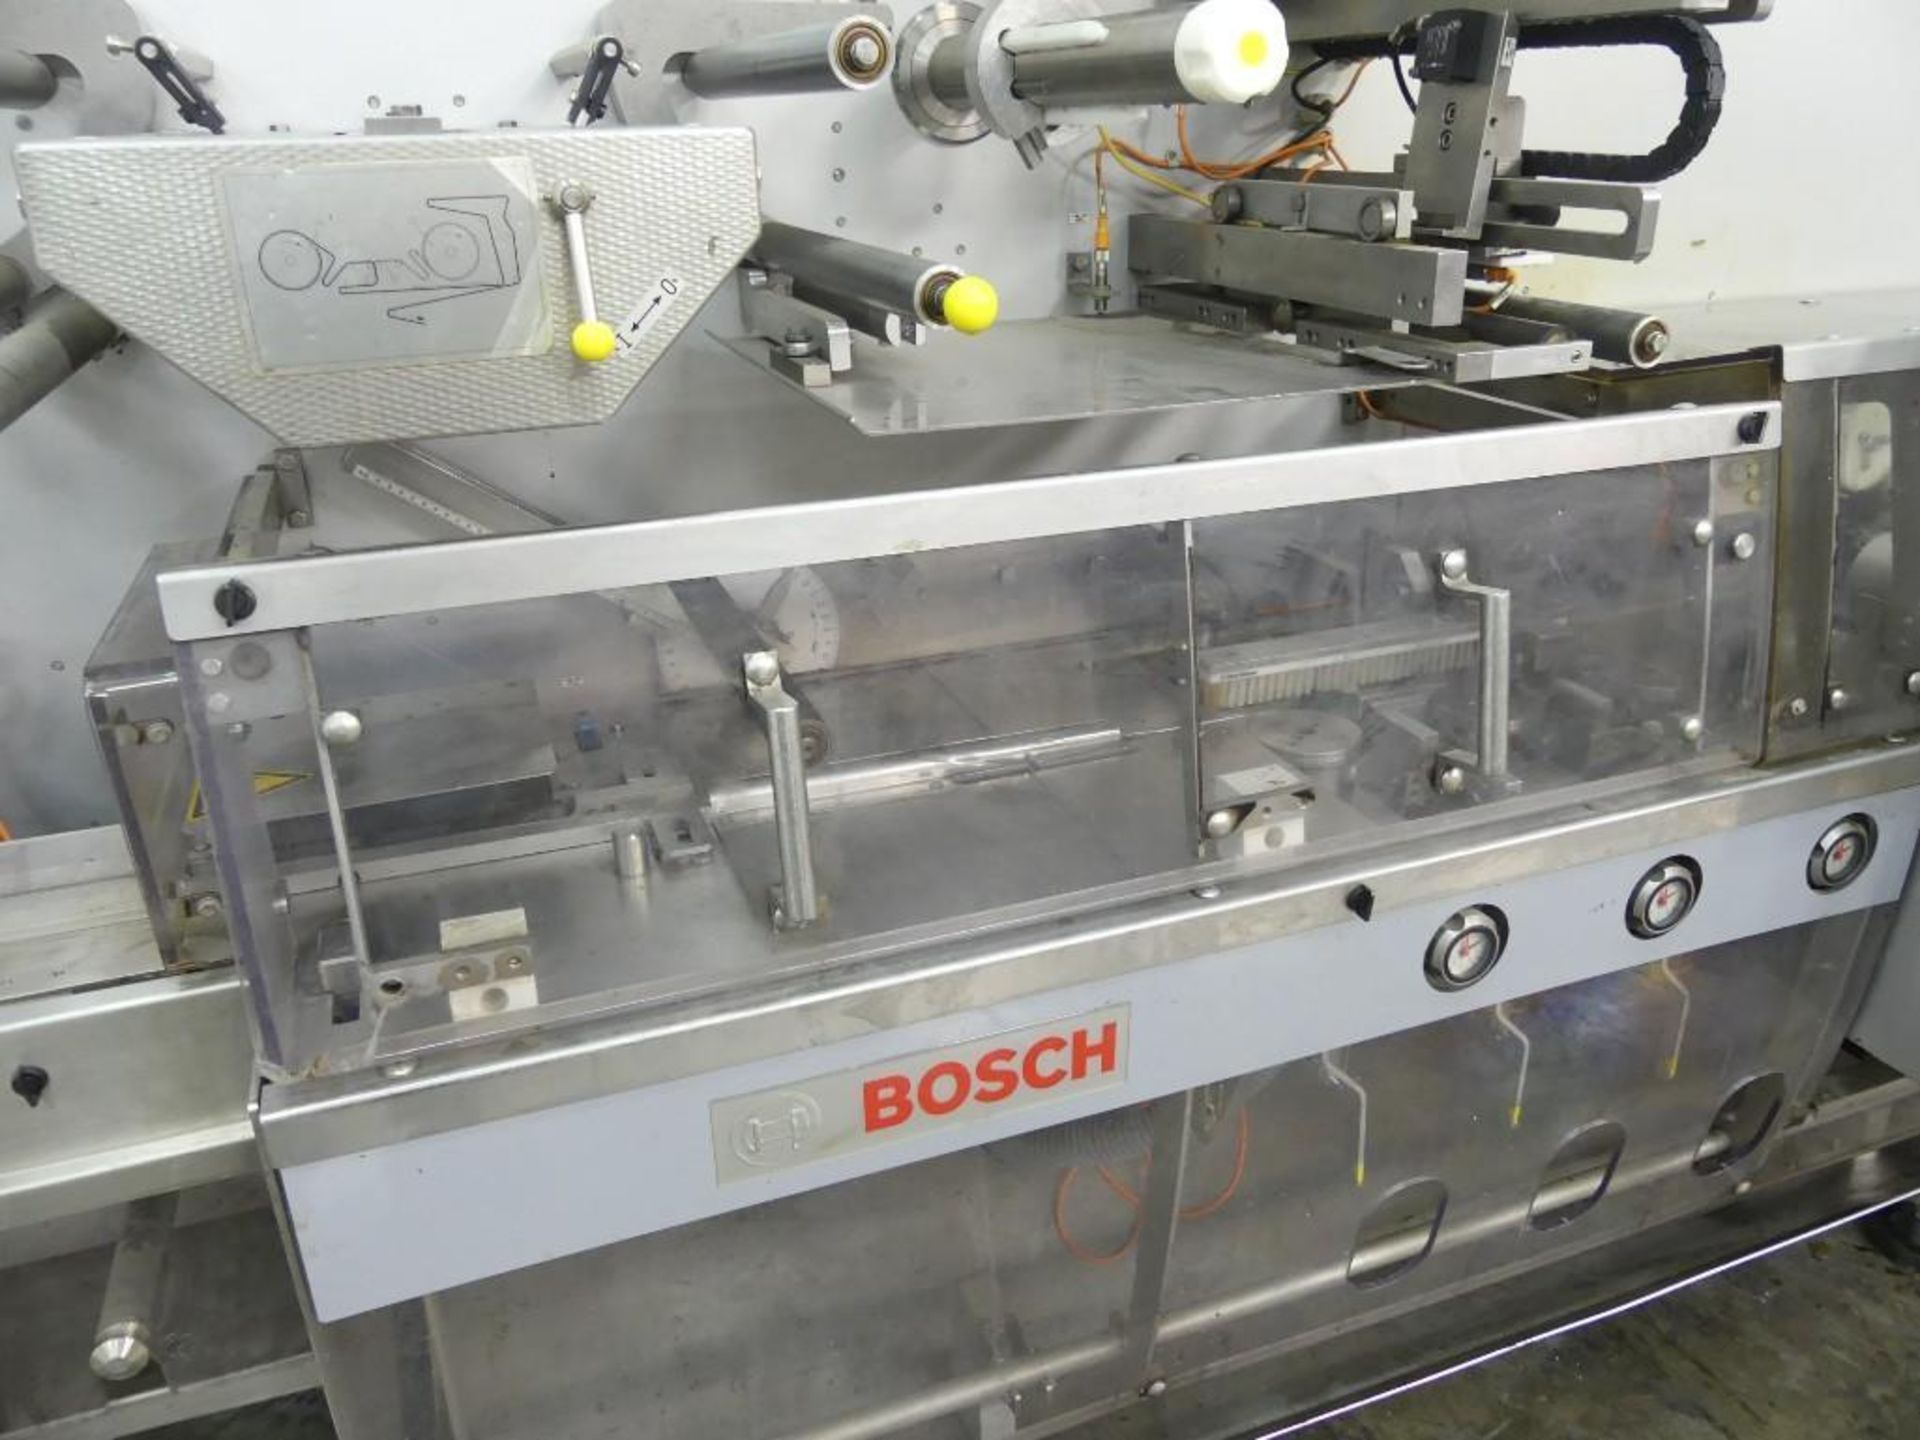 Bosch Sigpack HBM Flow Wrapper Print Registered - Image 11 of 27